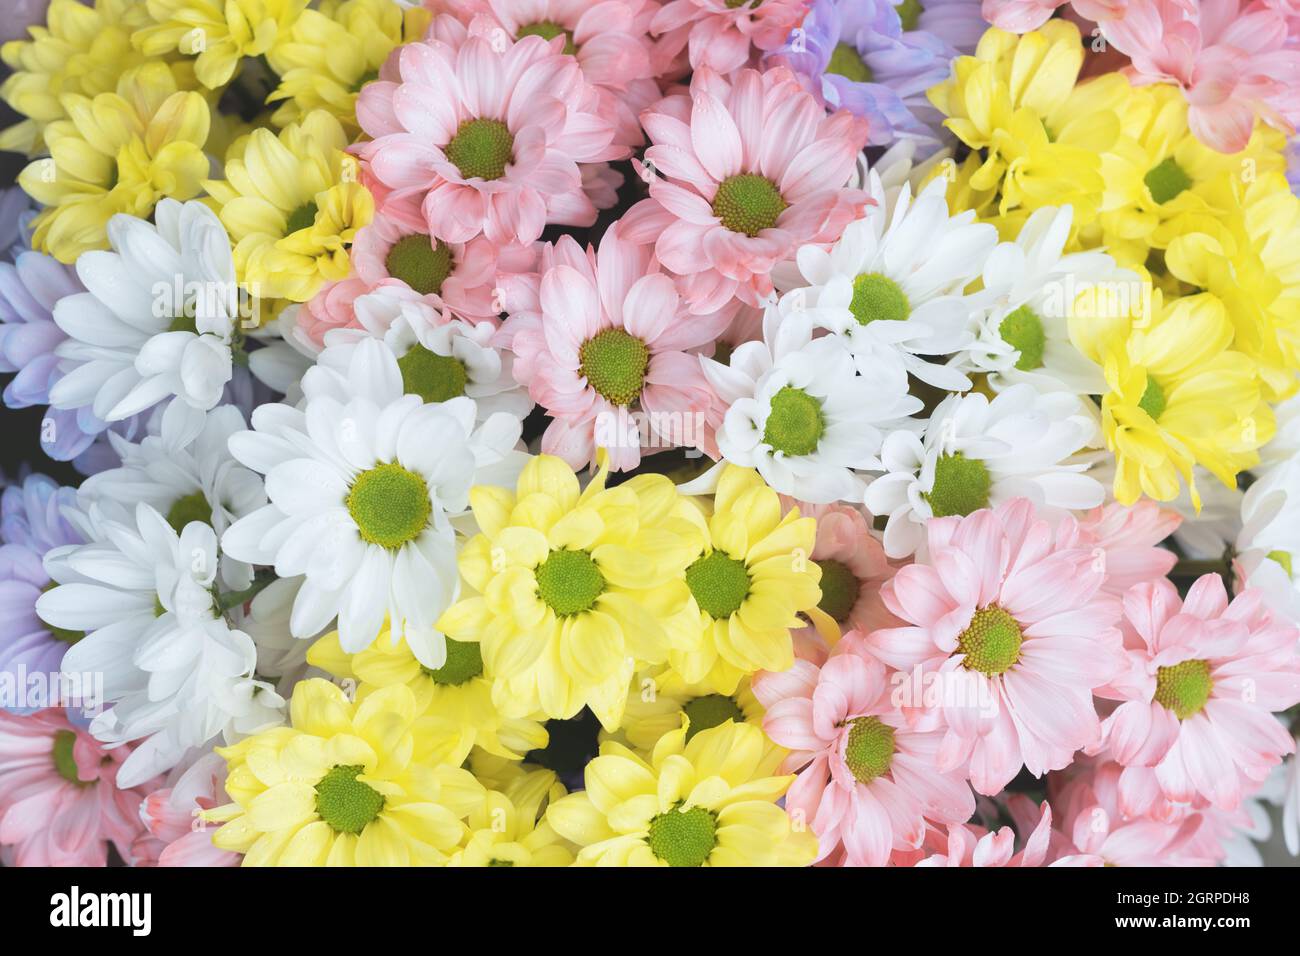 Blumenstrauß aus bunten zarten Pastellfarben Chrysantheme Blumen. Florales Konzept Stockfoto